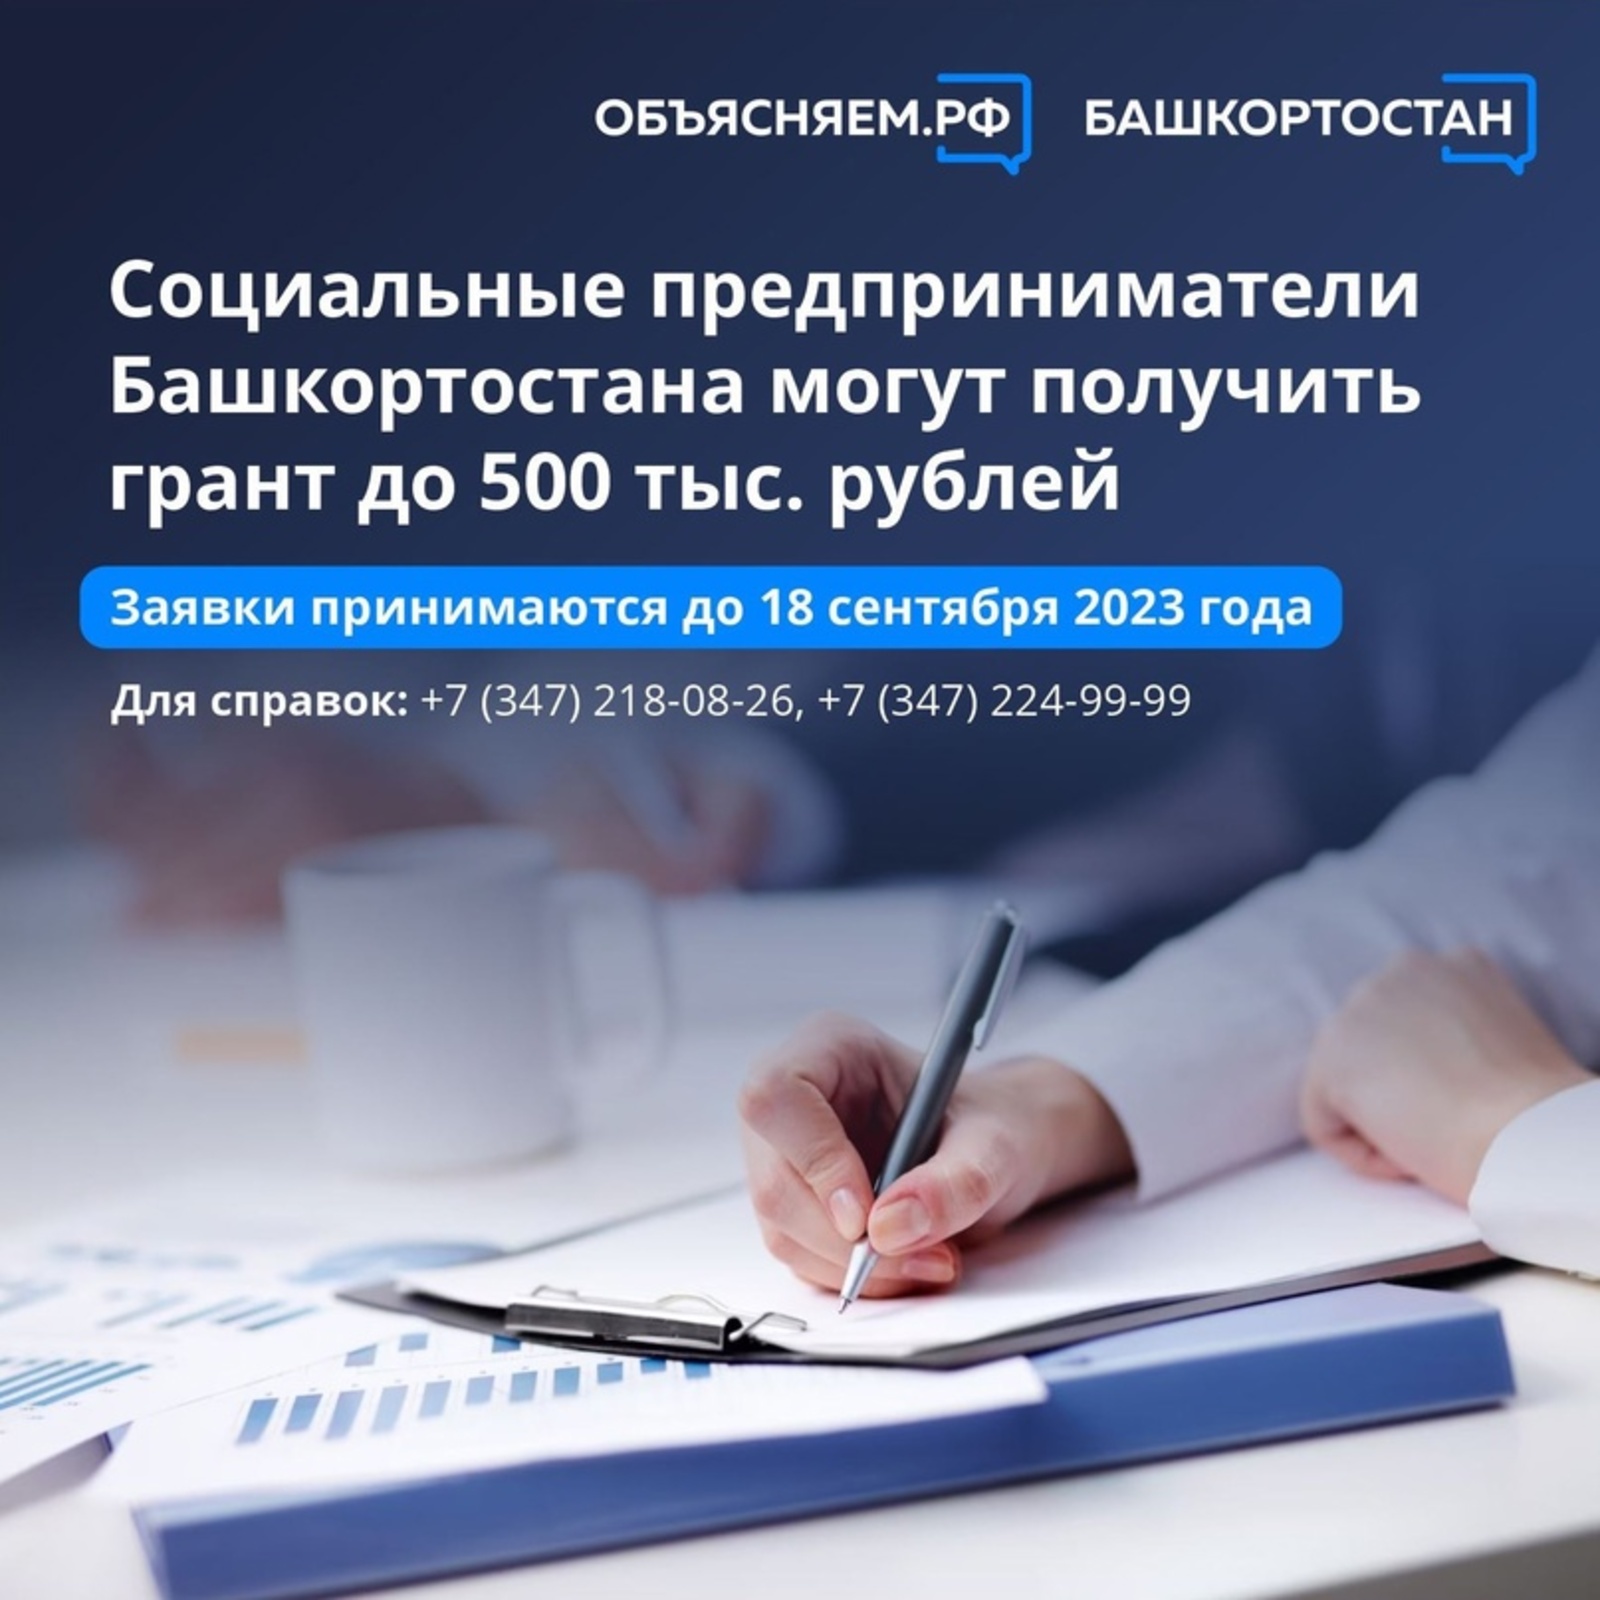 Социальные предприниматели Башкортостана могут получить грант до 500 тыс. рублей